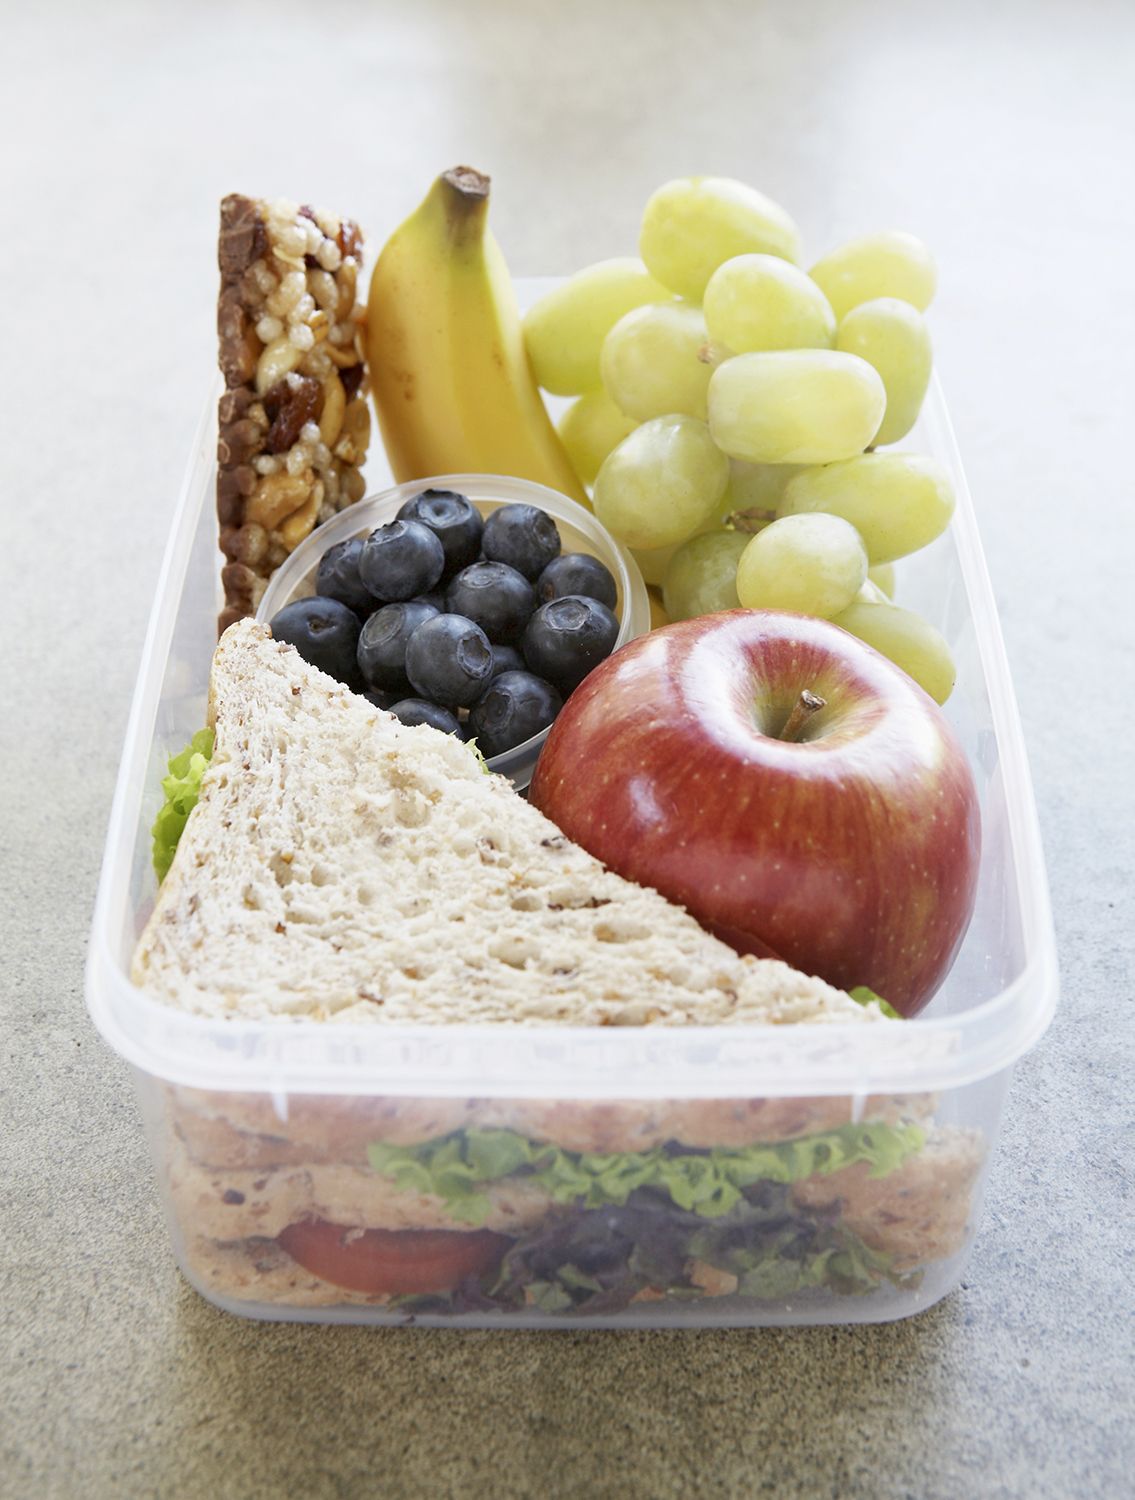 Čo odborníci na výživu balia do obedových škatúľ svojich detí